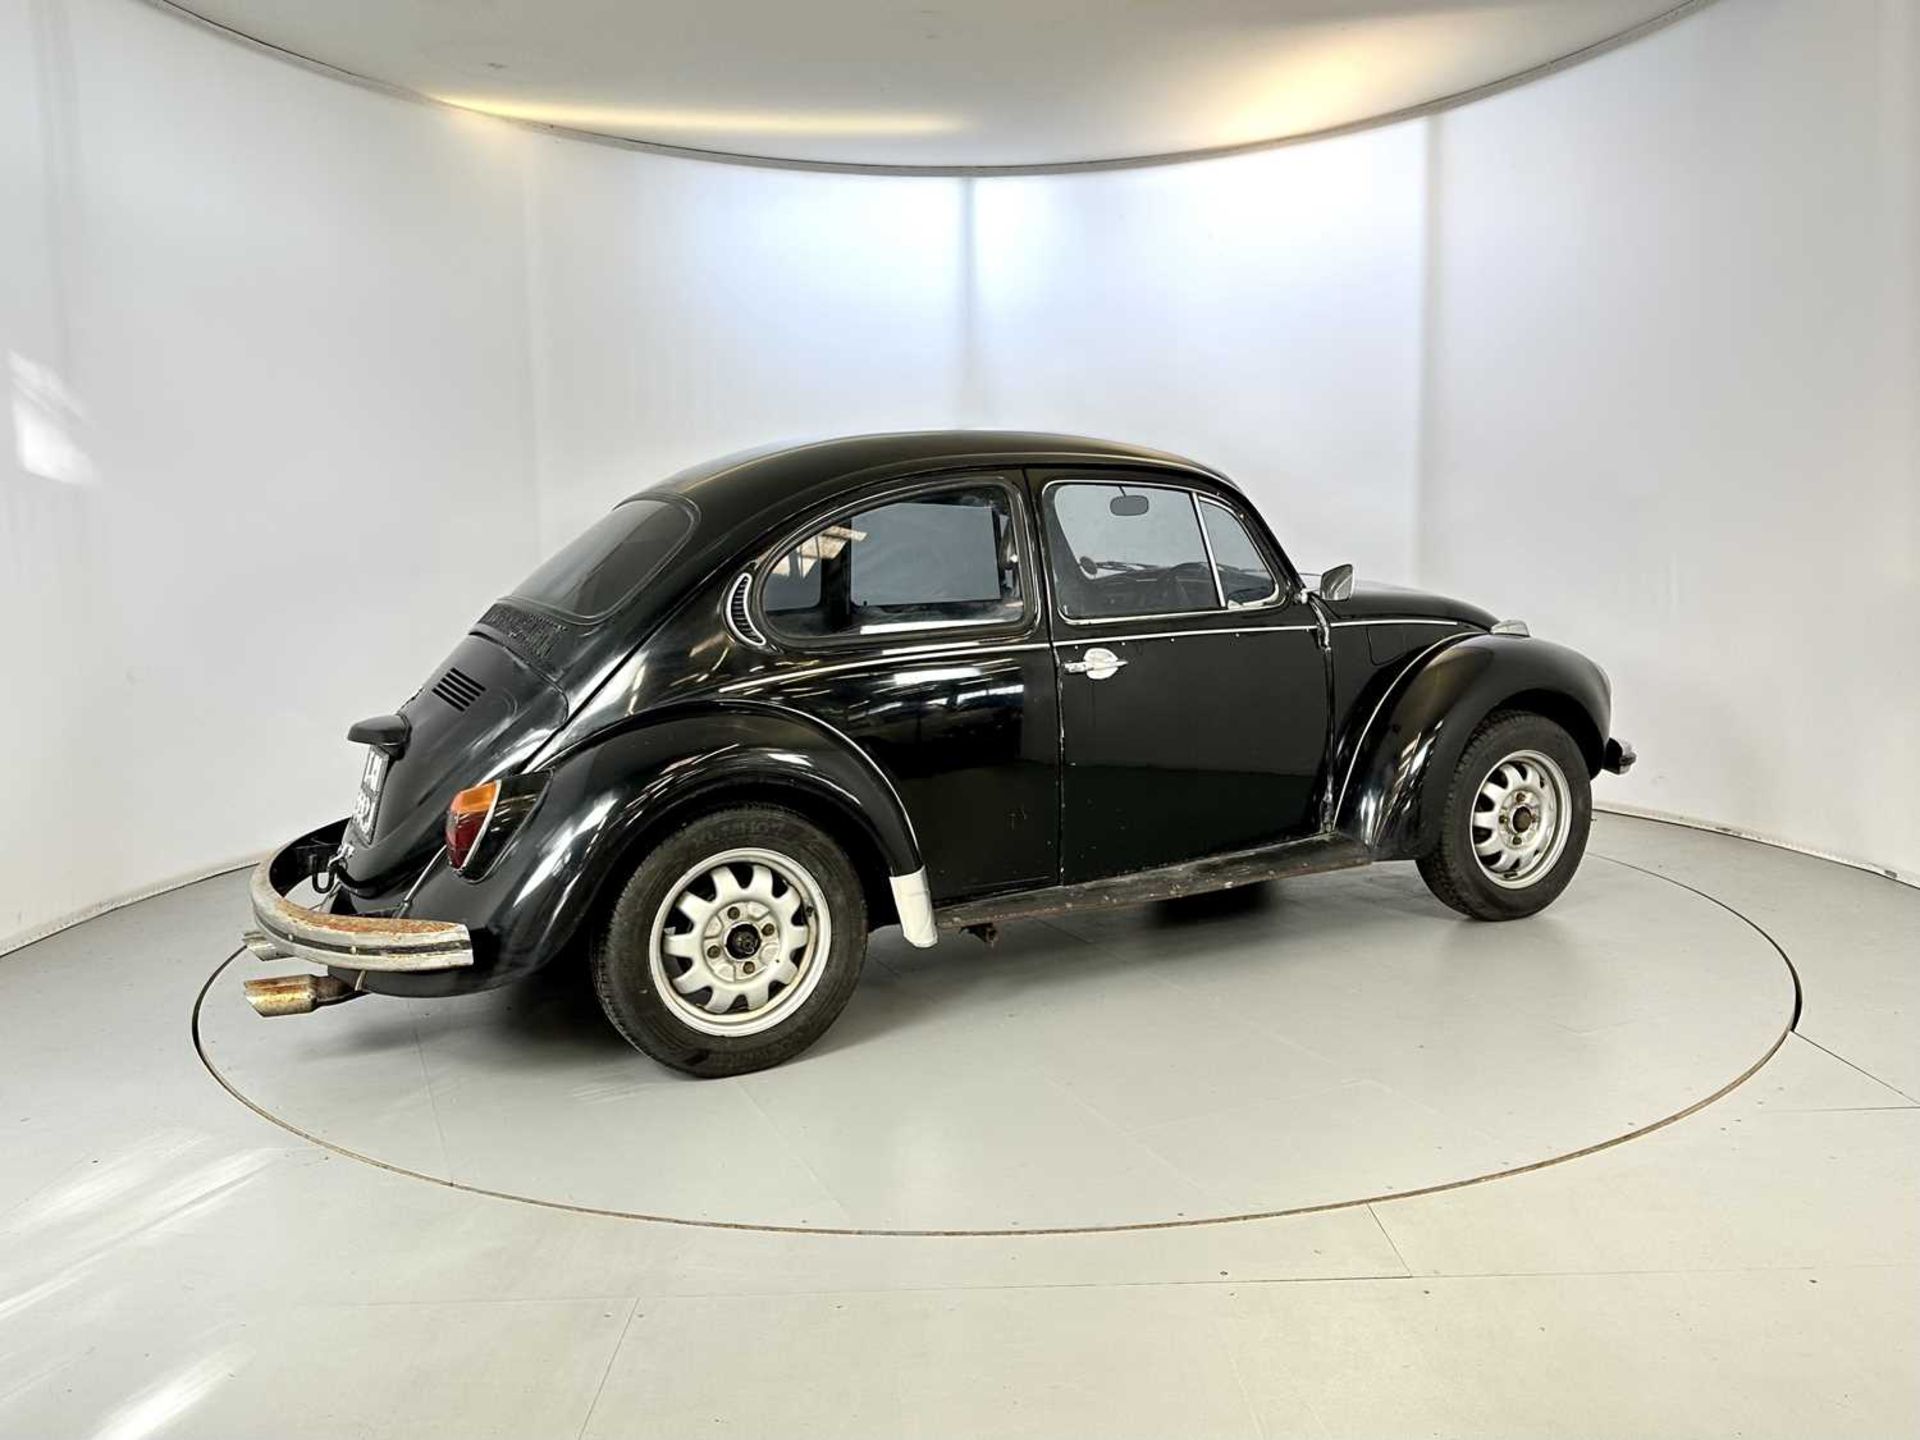 1971 Volkswagen Beetle - Image 10 of 29